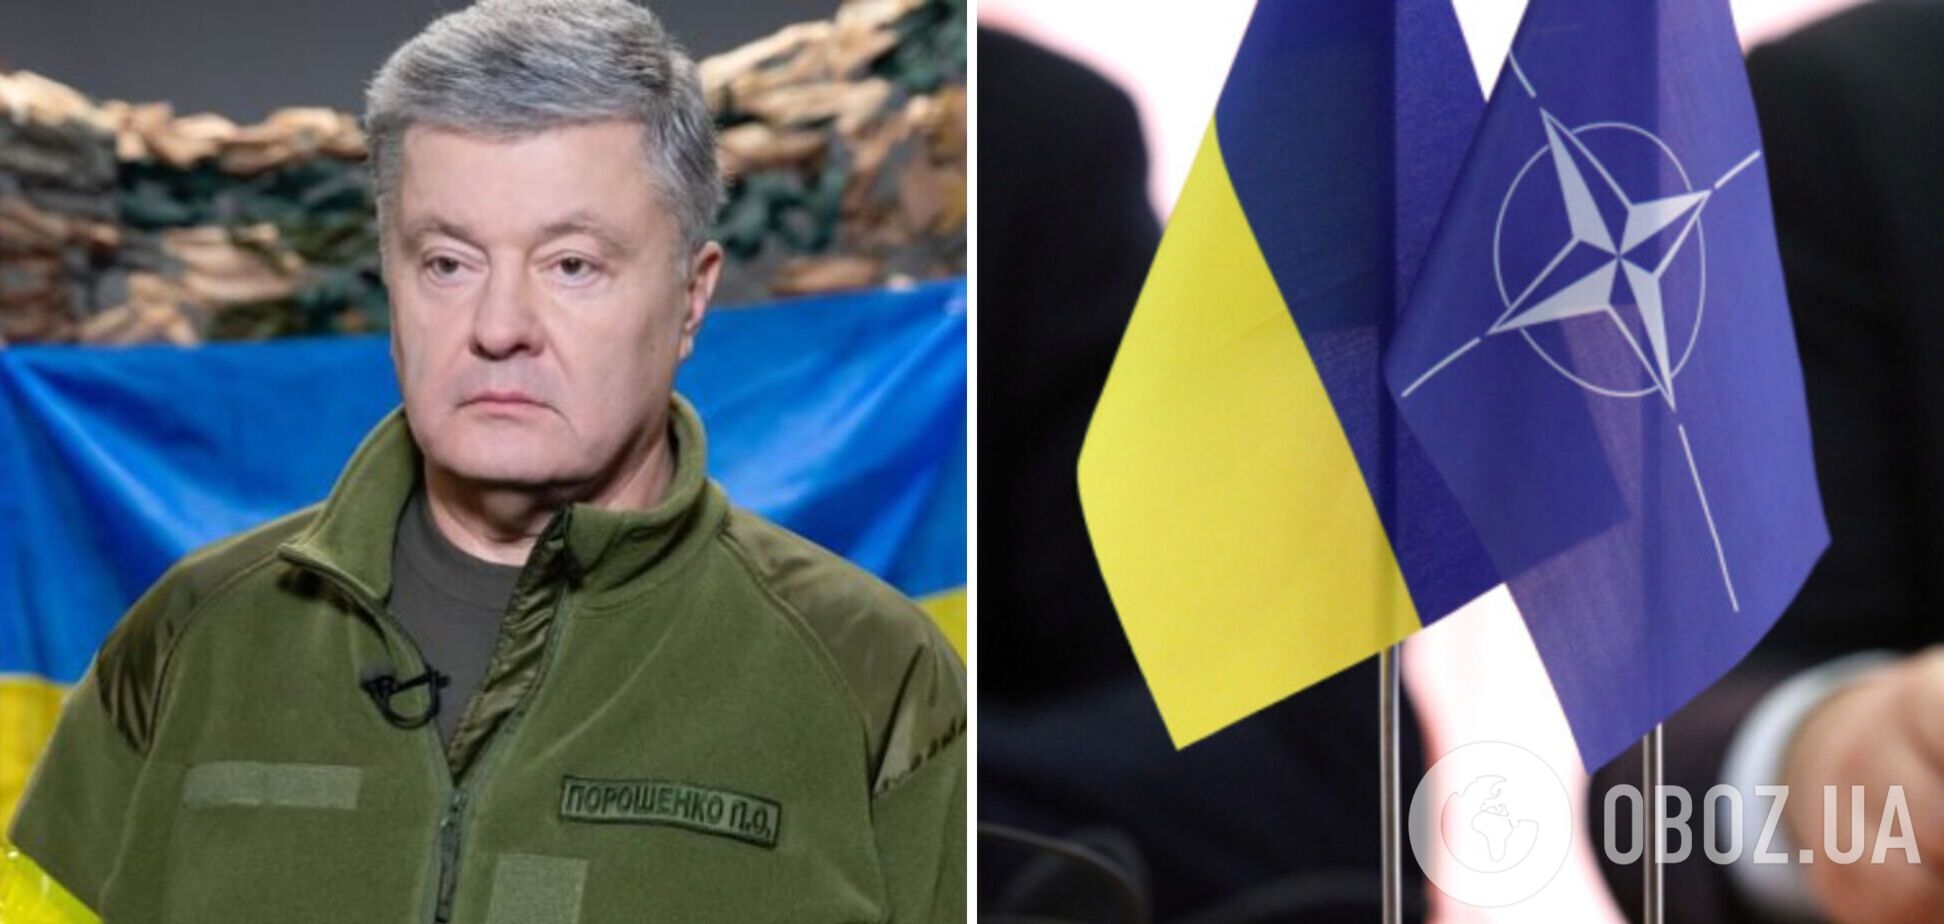 Делегация Украины в ПА НАТО должна инициировать решение в поддержку членства страны в Альянсе, – Порошенко